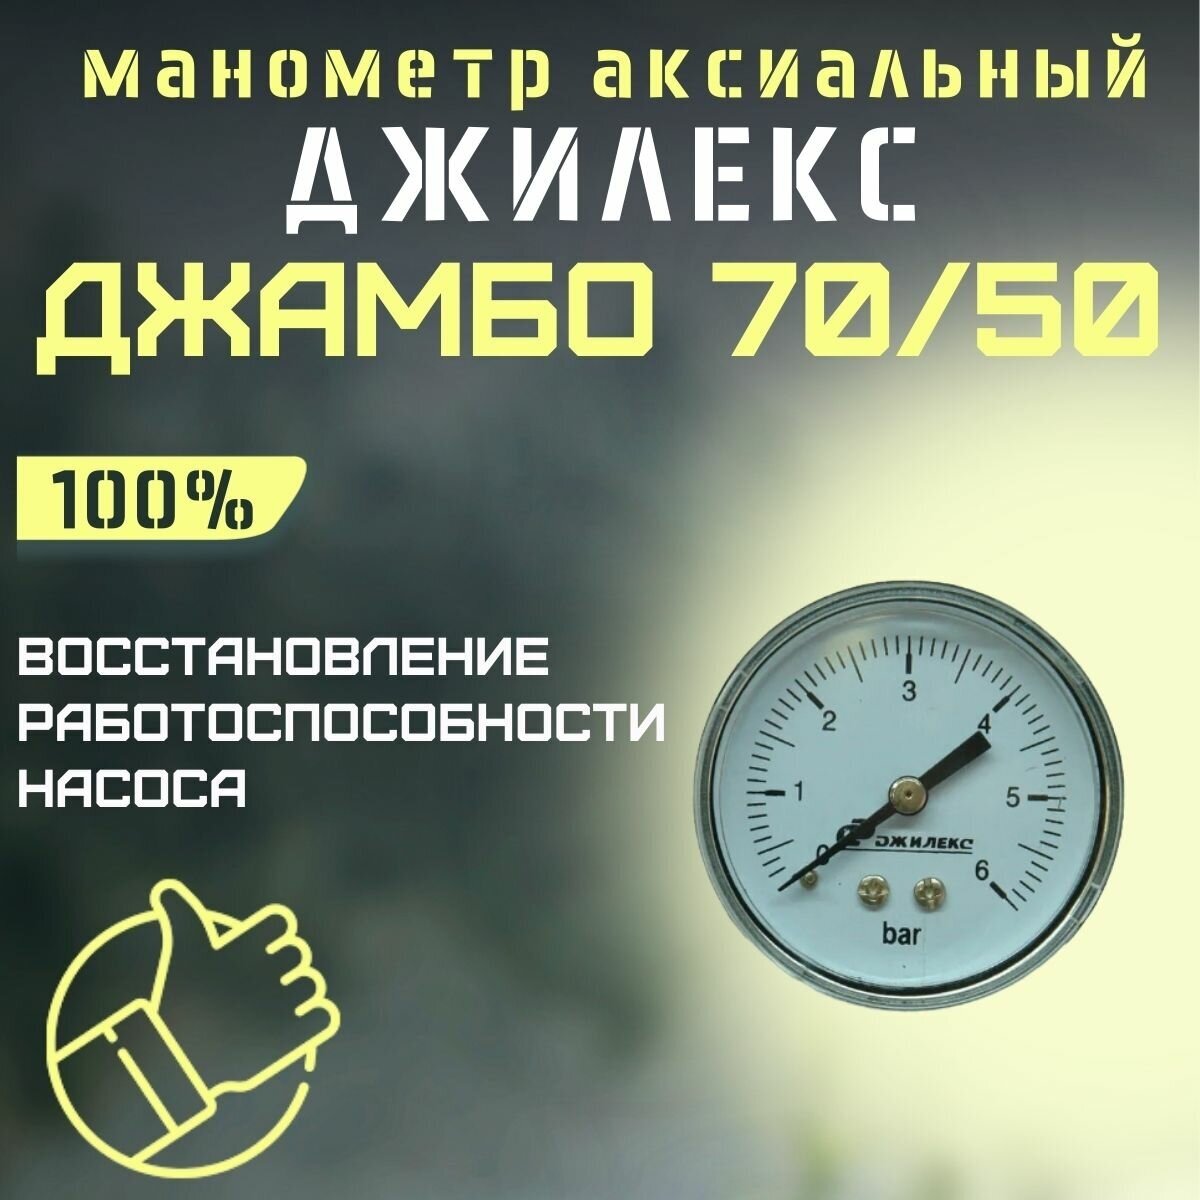 Джилекс манометр аксиальный Джамбо 70/50 (manom7050)